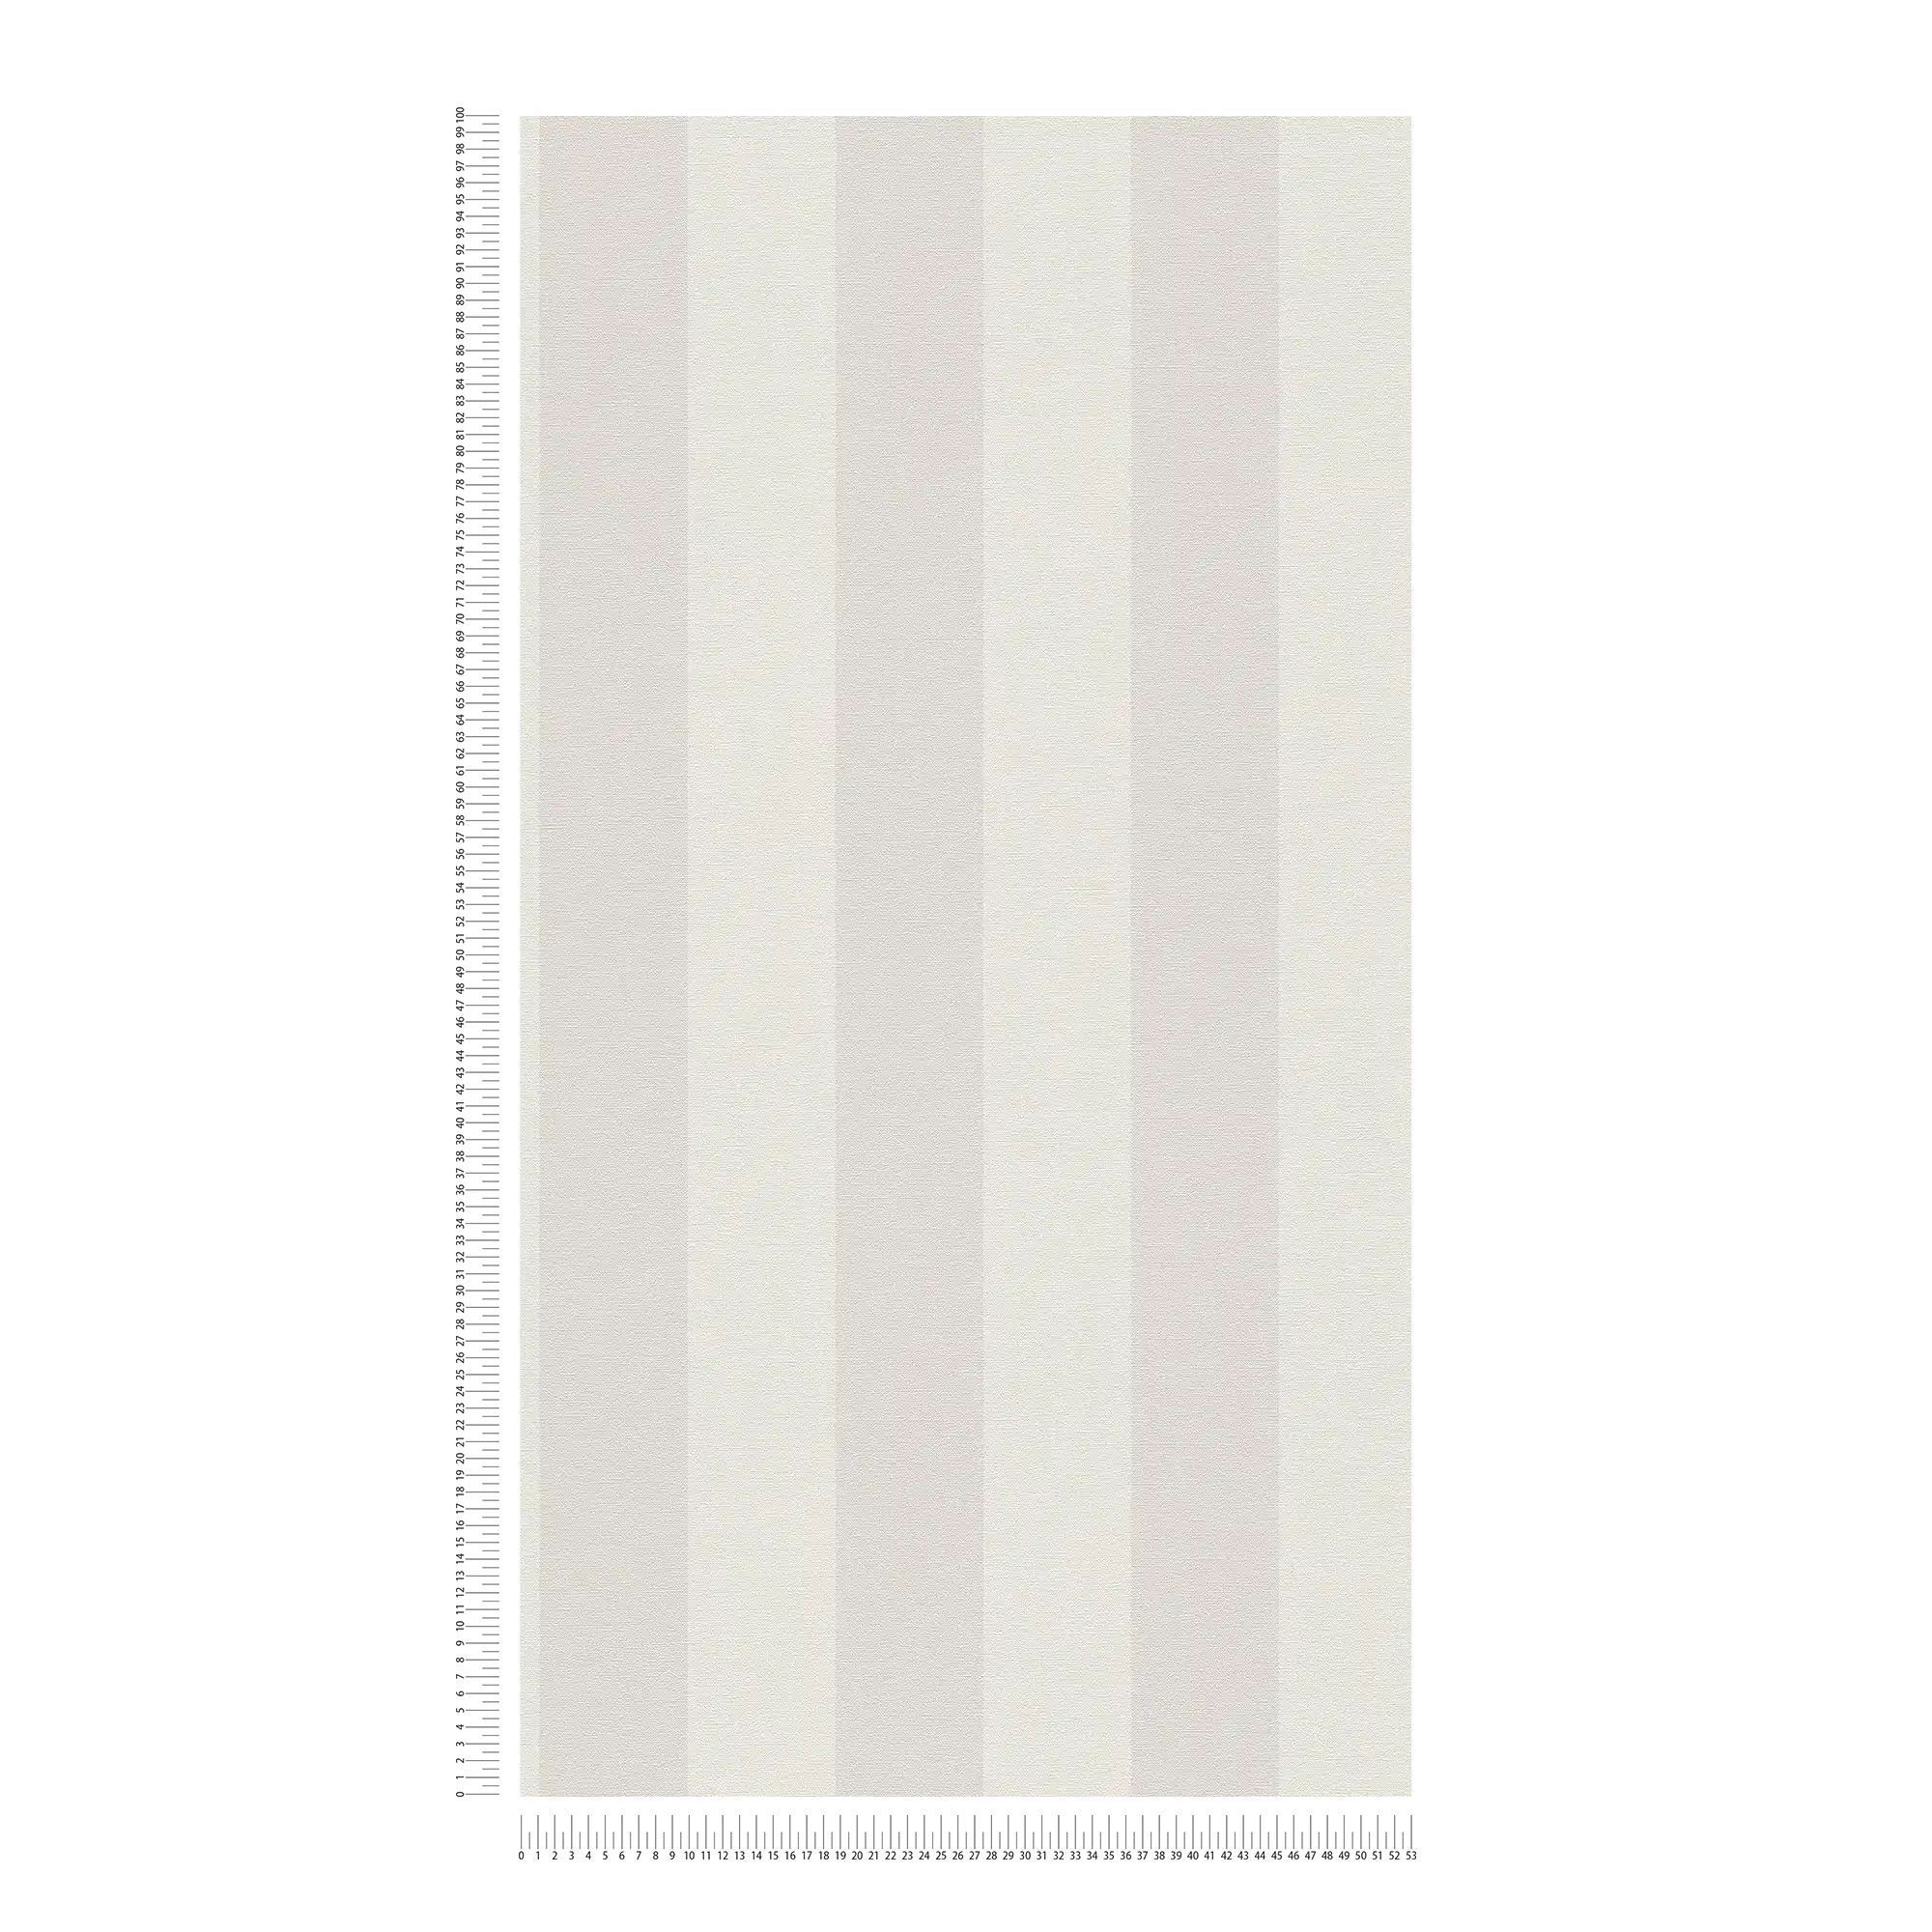             Gestreept vliesbehang met linnenlook PVC-vrij - grijs, wit
        